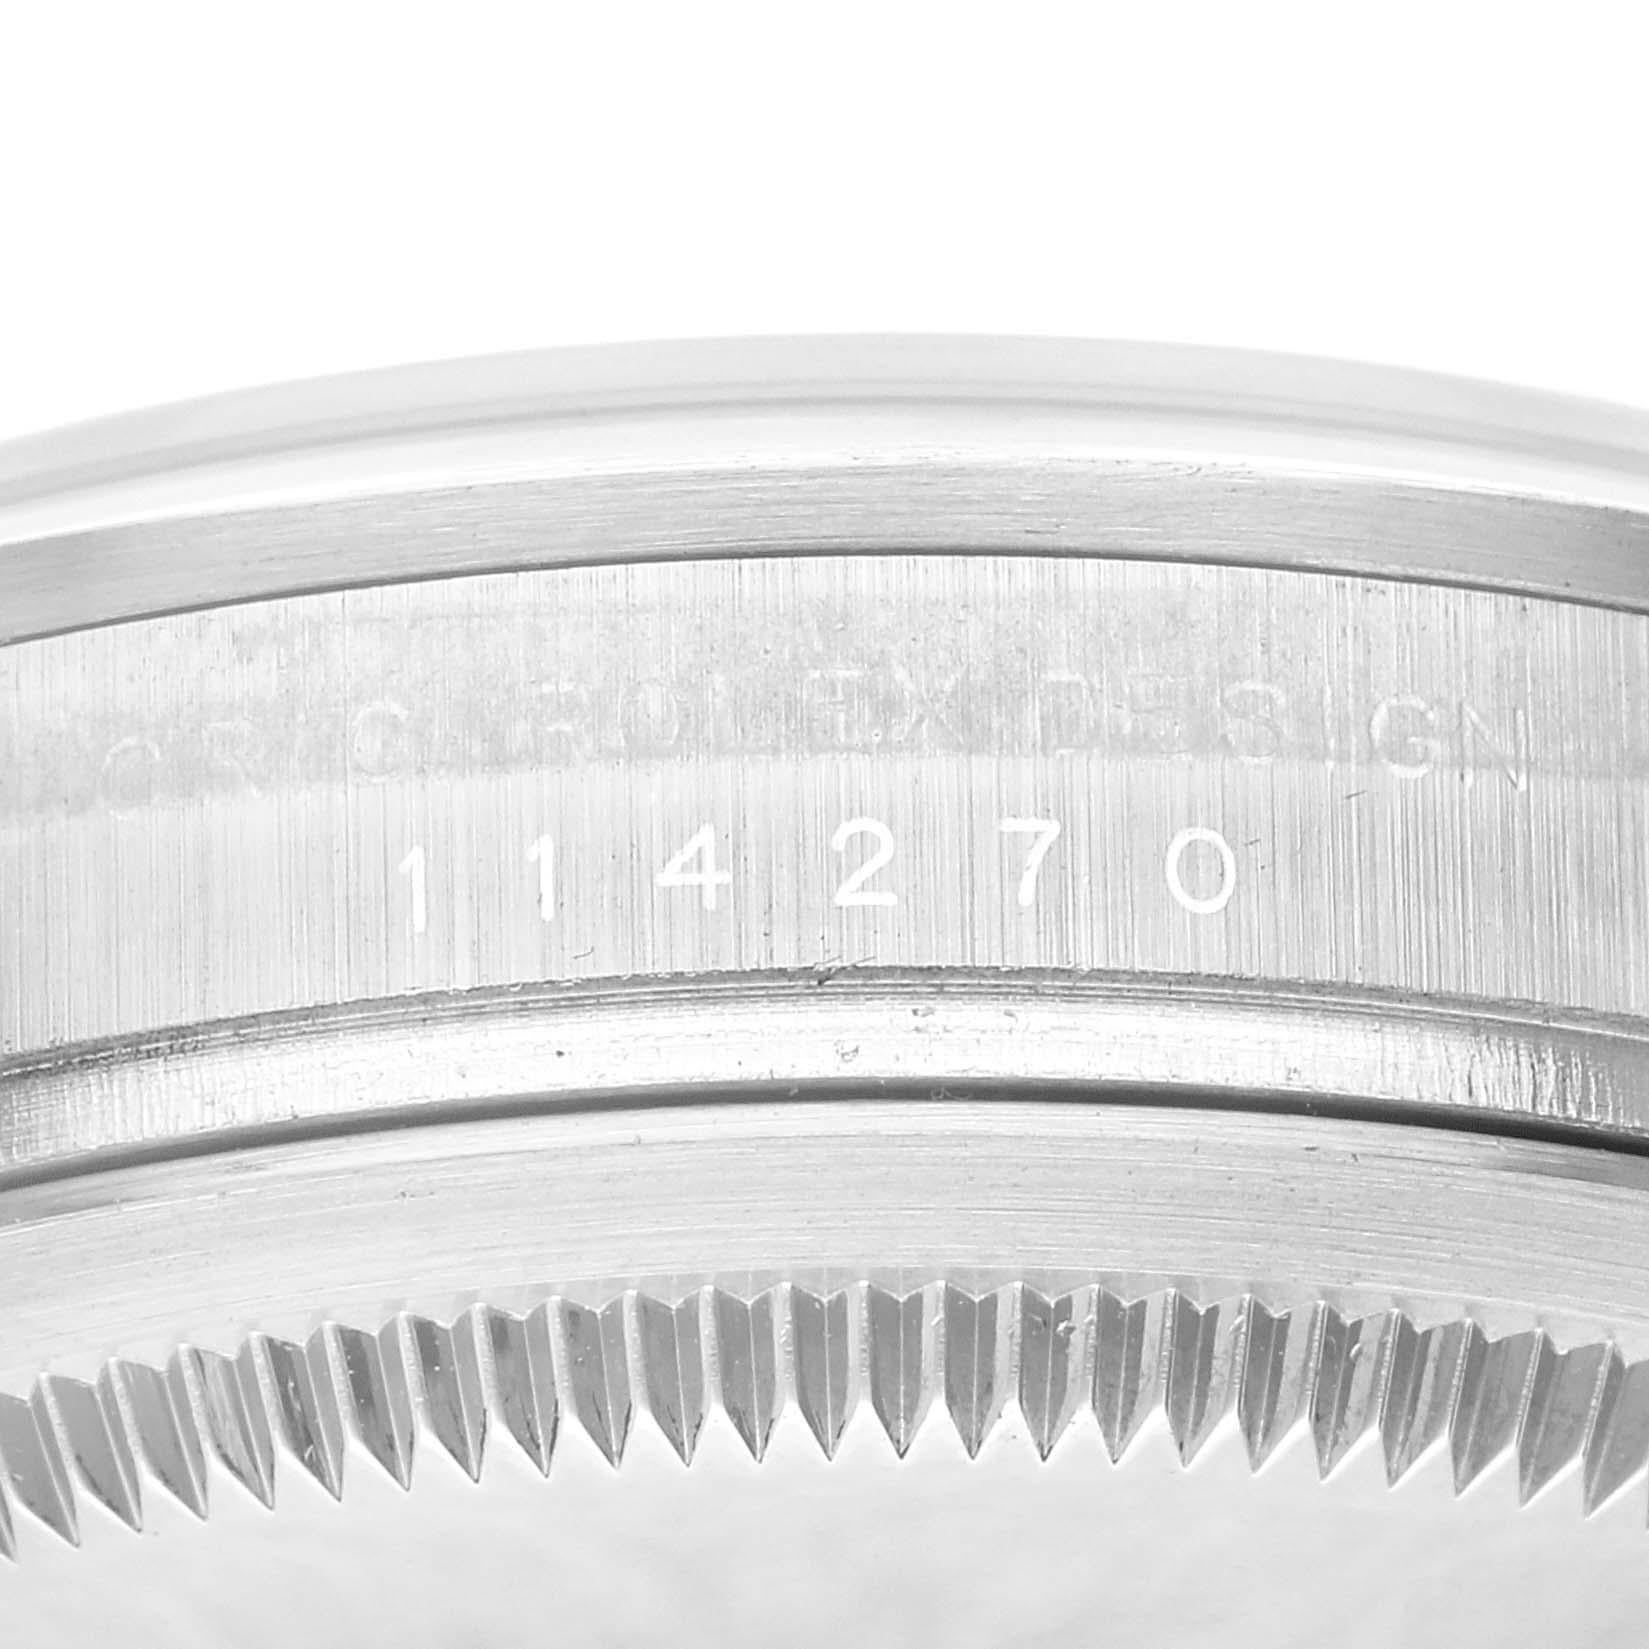 Rolex Explorer I Schwarzes Zifferblatt Stahl Herrenuhr 114270 Box Papiere. Offiziell zertifiziertes Chronometerwerk mit automatischem Aufzug. Gehäuse aus Edelstahl mit einem Durchmesser von 36.0 mm. Rolex Logo auf der Krone. Glatte Lünette aus